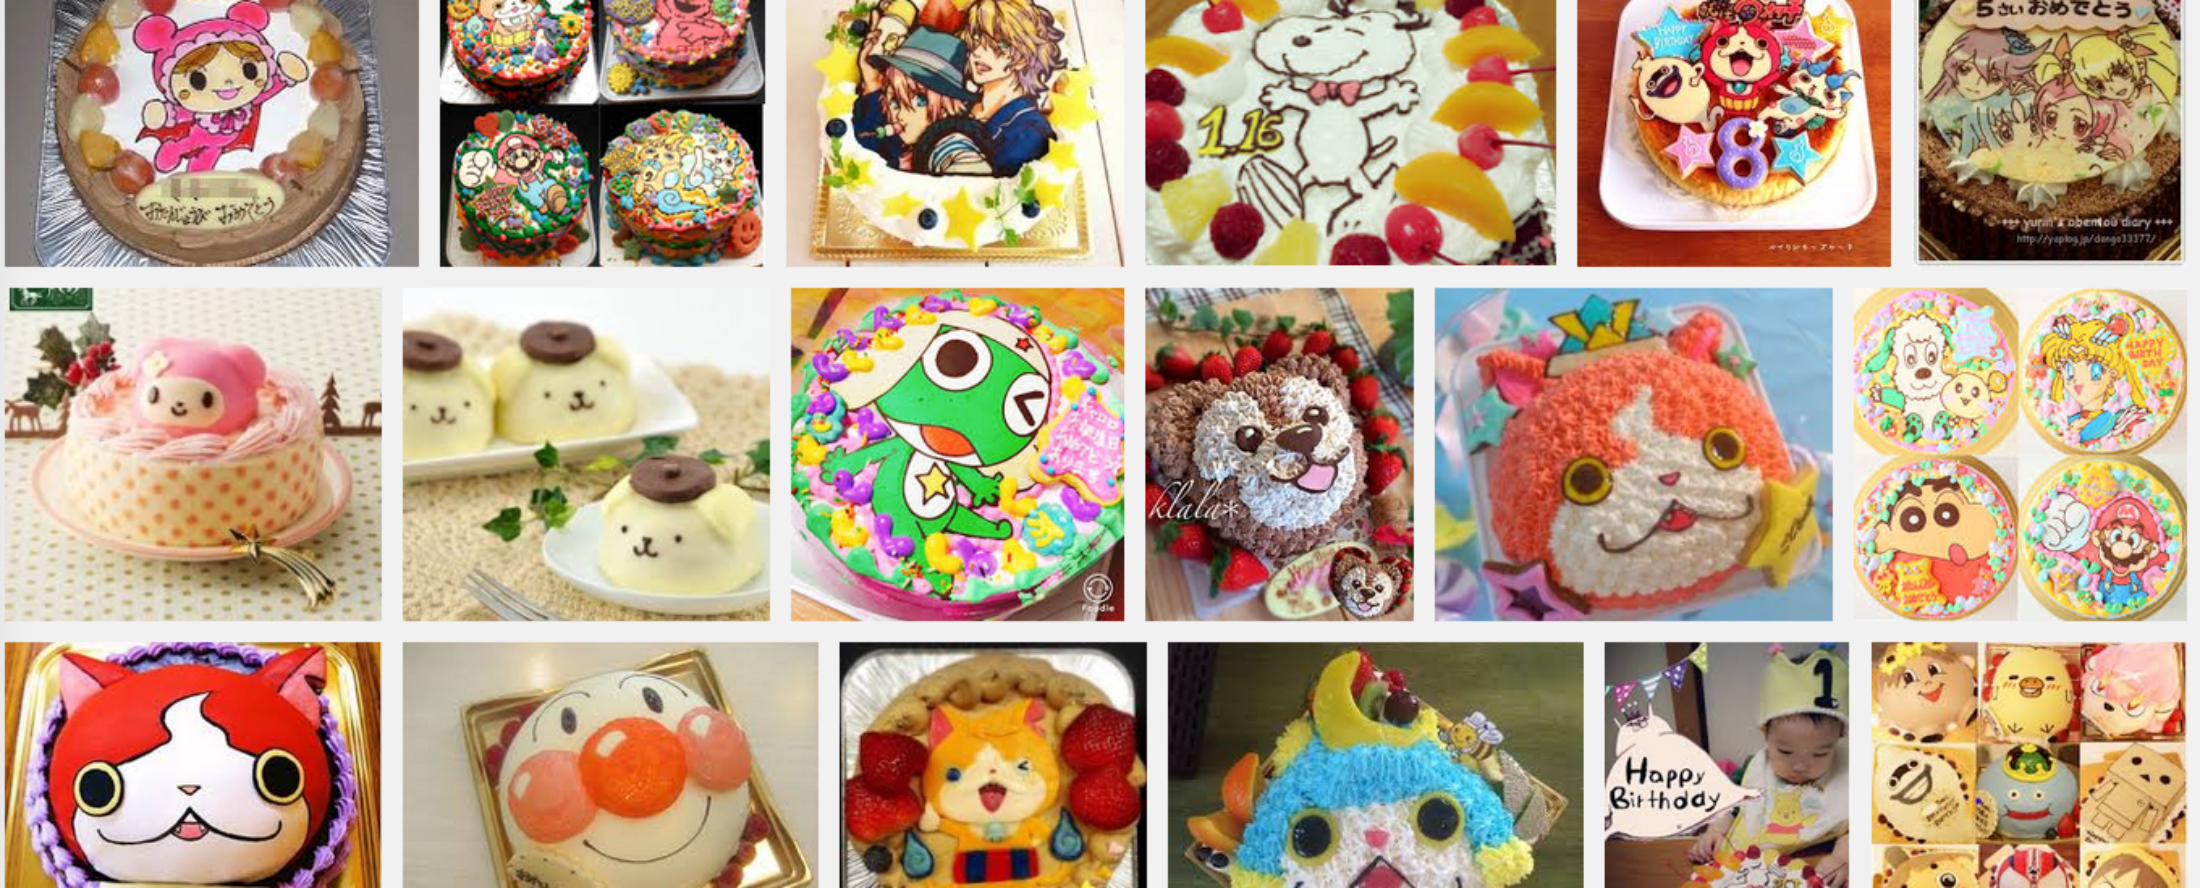 キャラクターケーキが注文できる岡山県のケーキ店 キャラケーキ通販ランキング